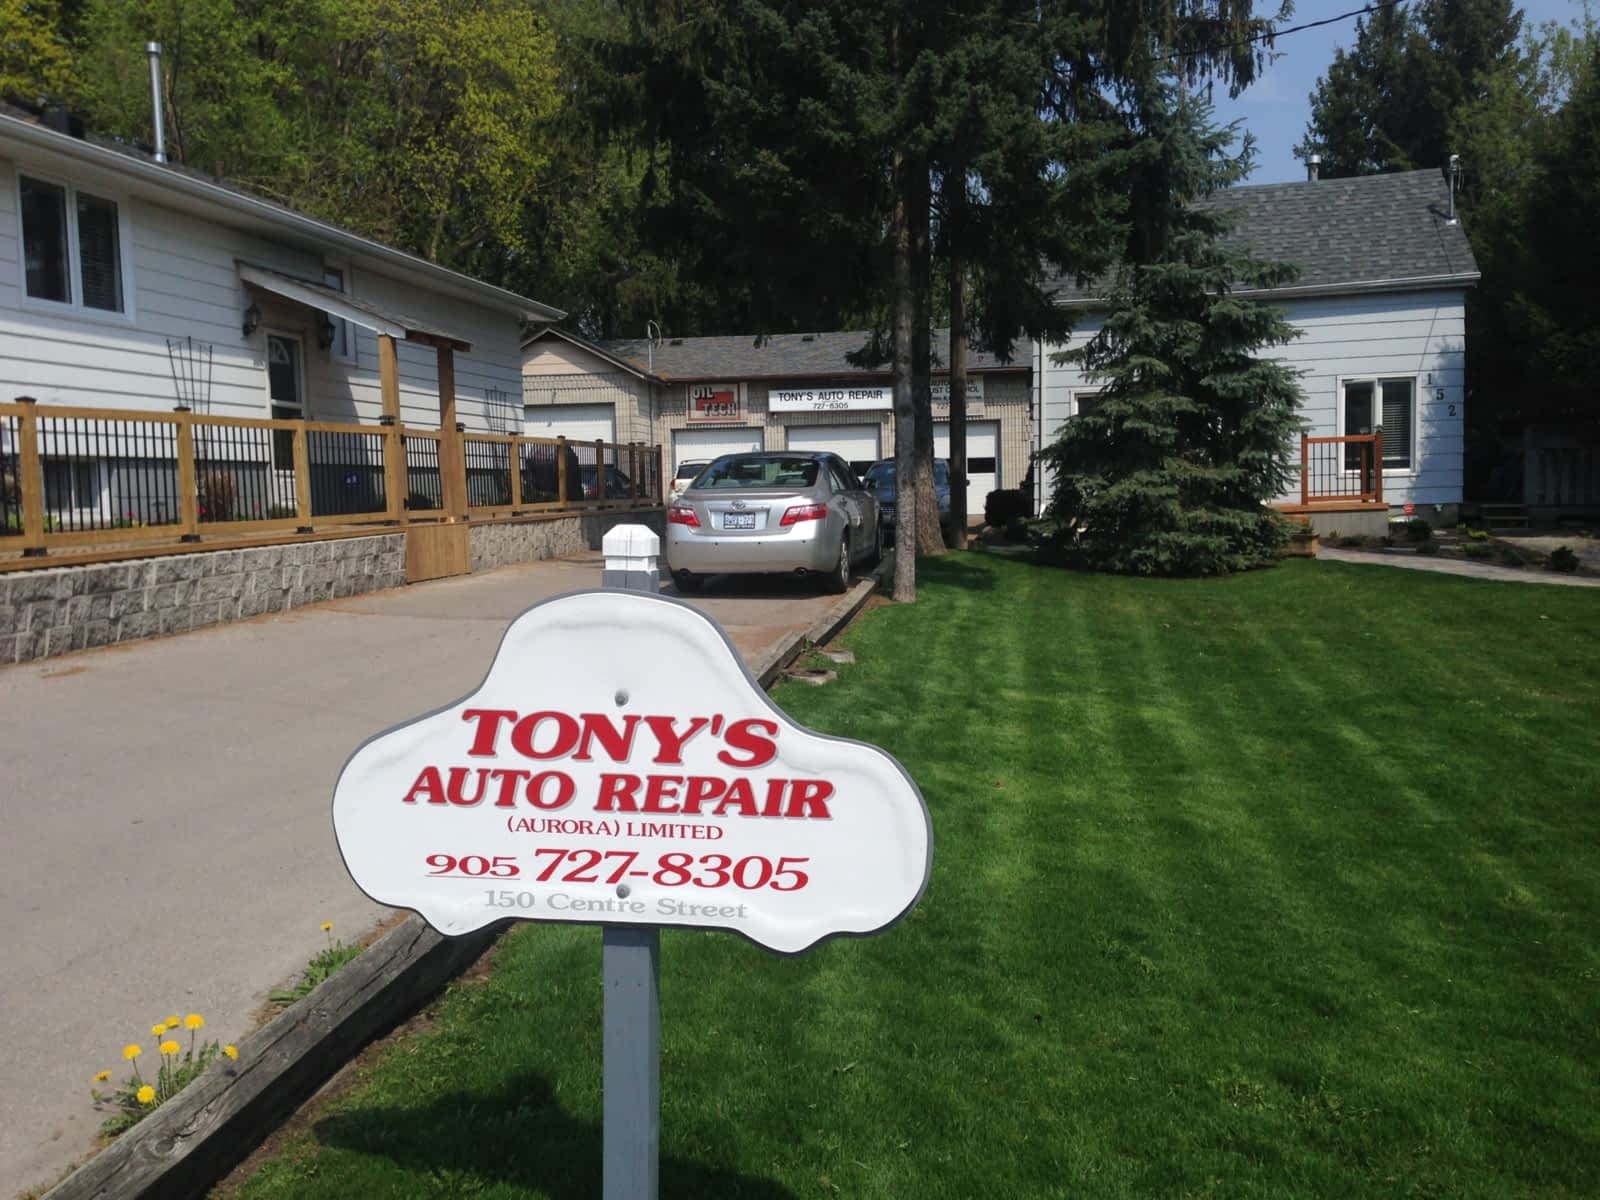 Tony's Auto Repair Aurora Limited